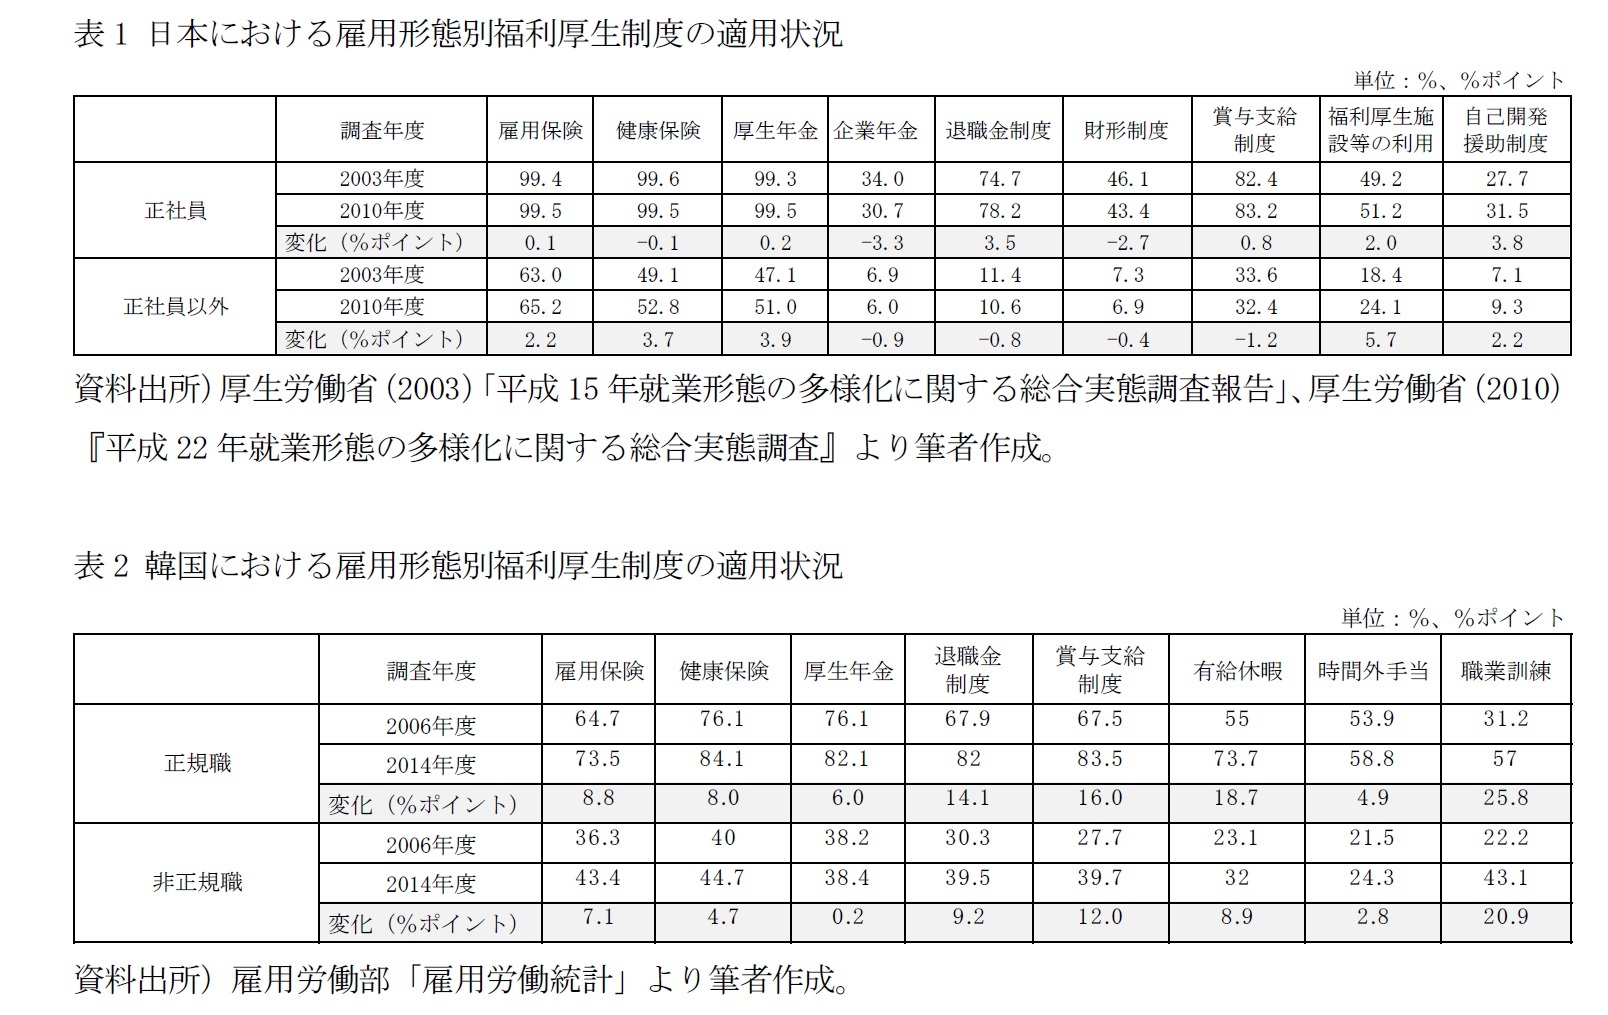 表1 日本における雇用形態別福利厚生制度の適用状況/表2 韓国における雇用形態別福利厚生制度の適用状況